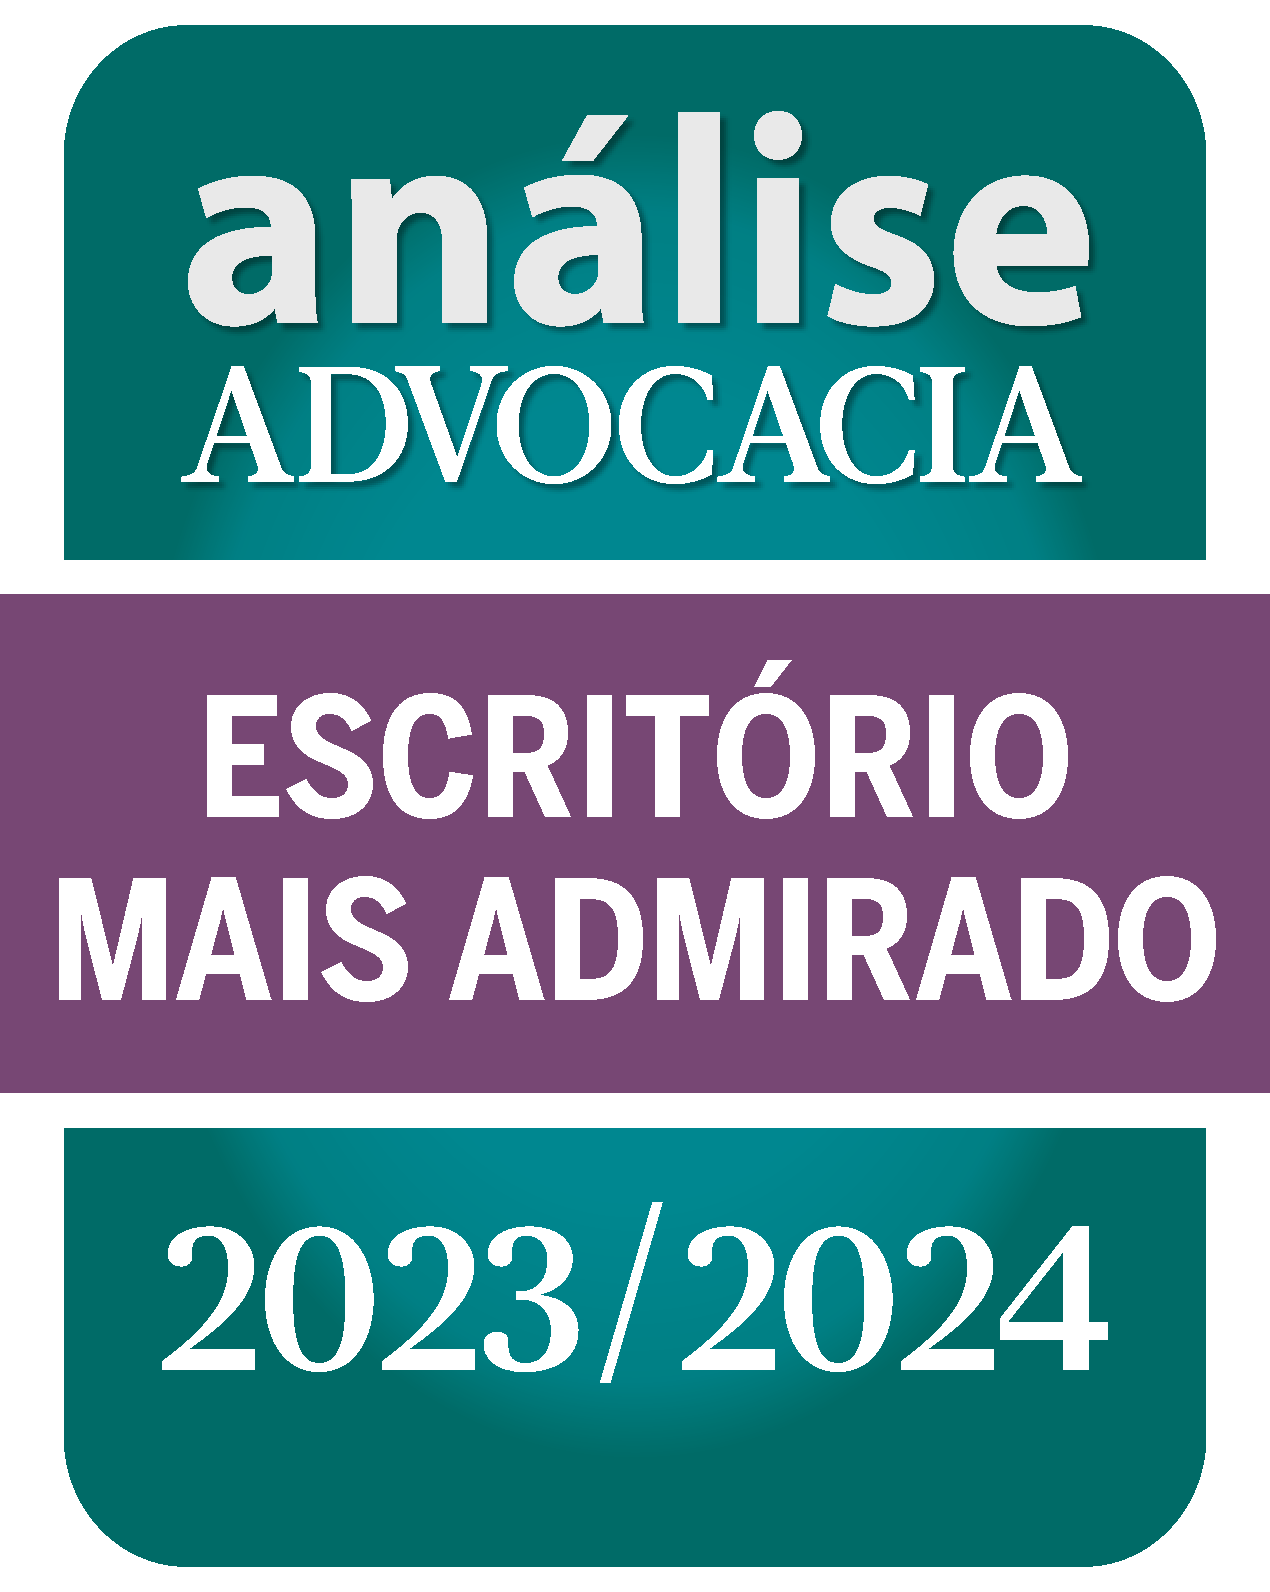 Análise Advocacia - Escritório Mais Admirado 2023/2024